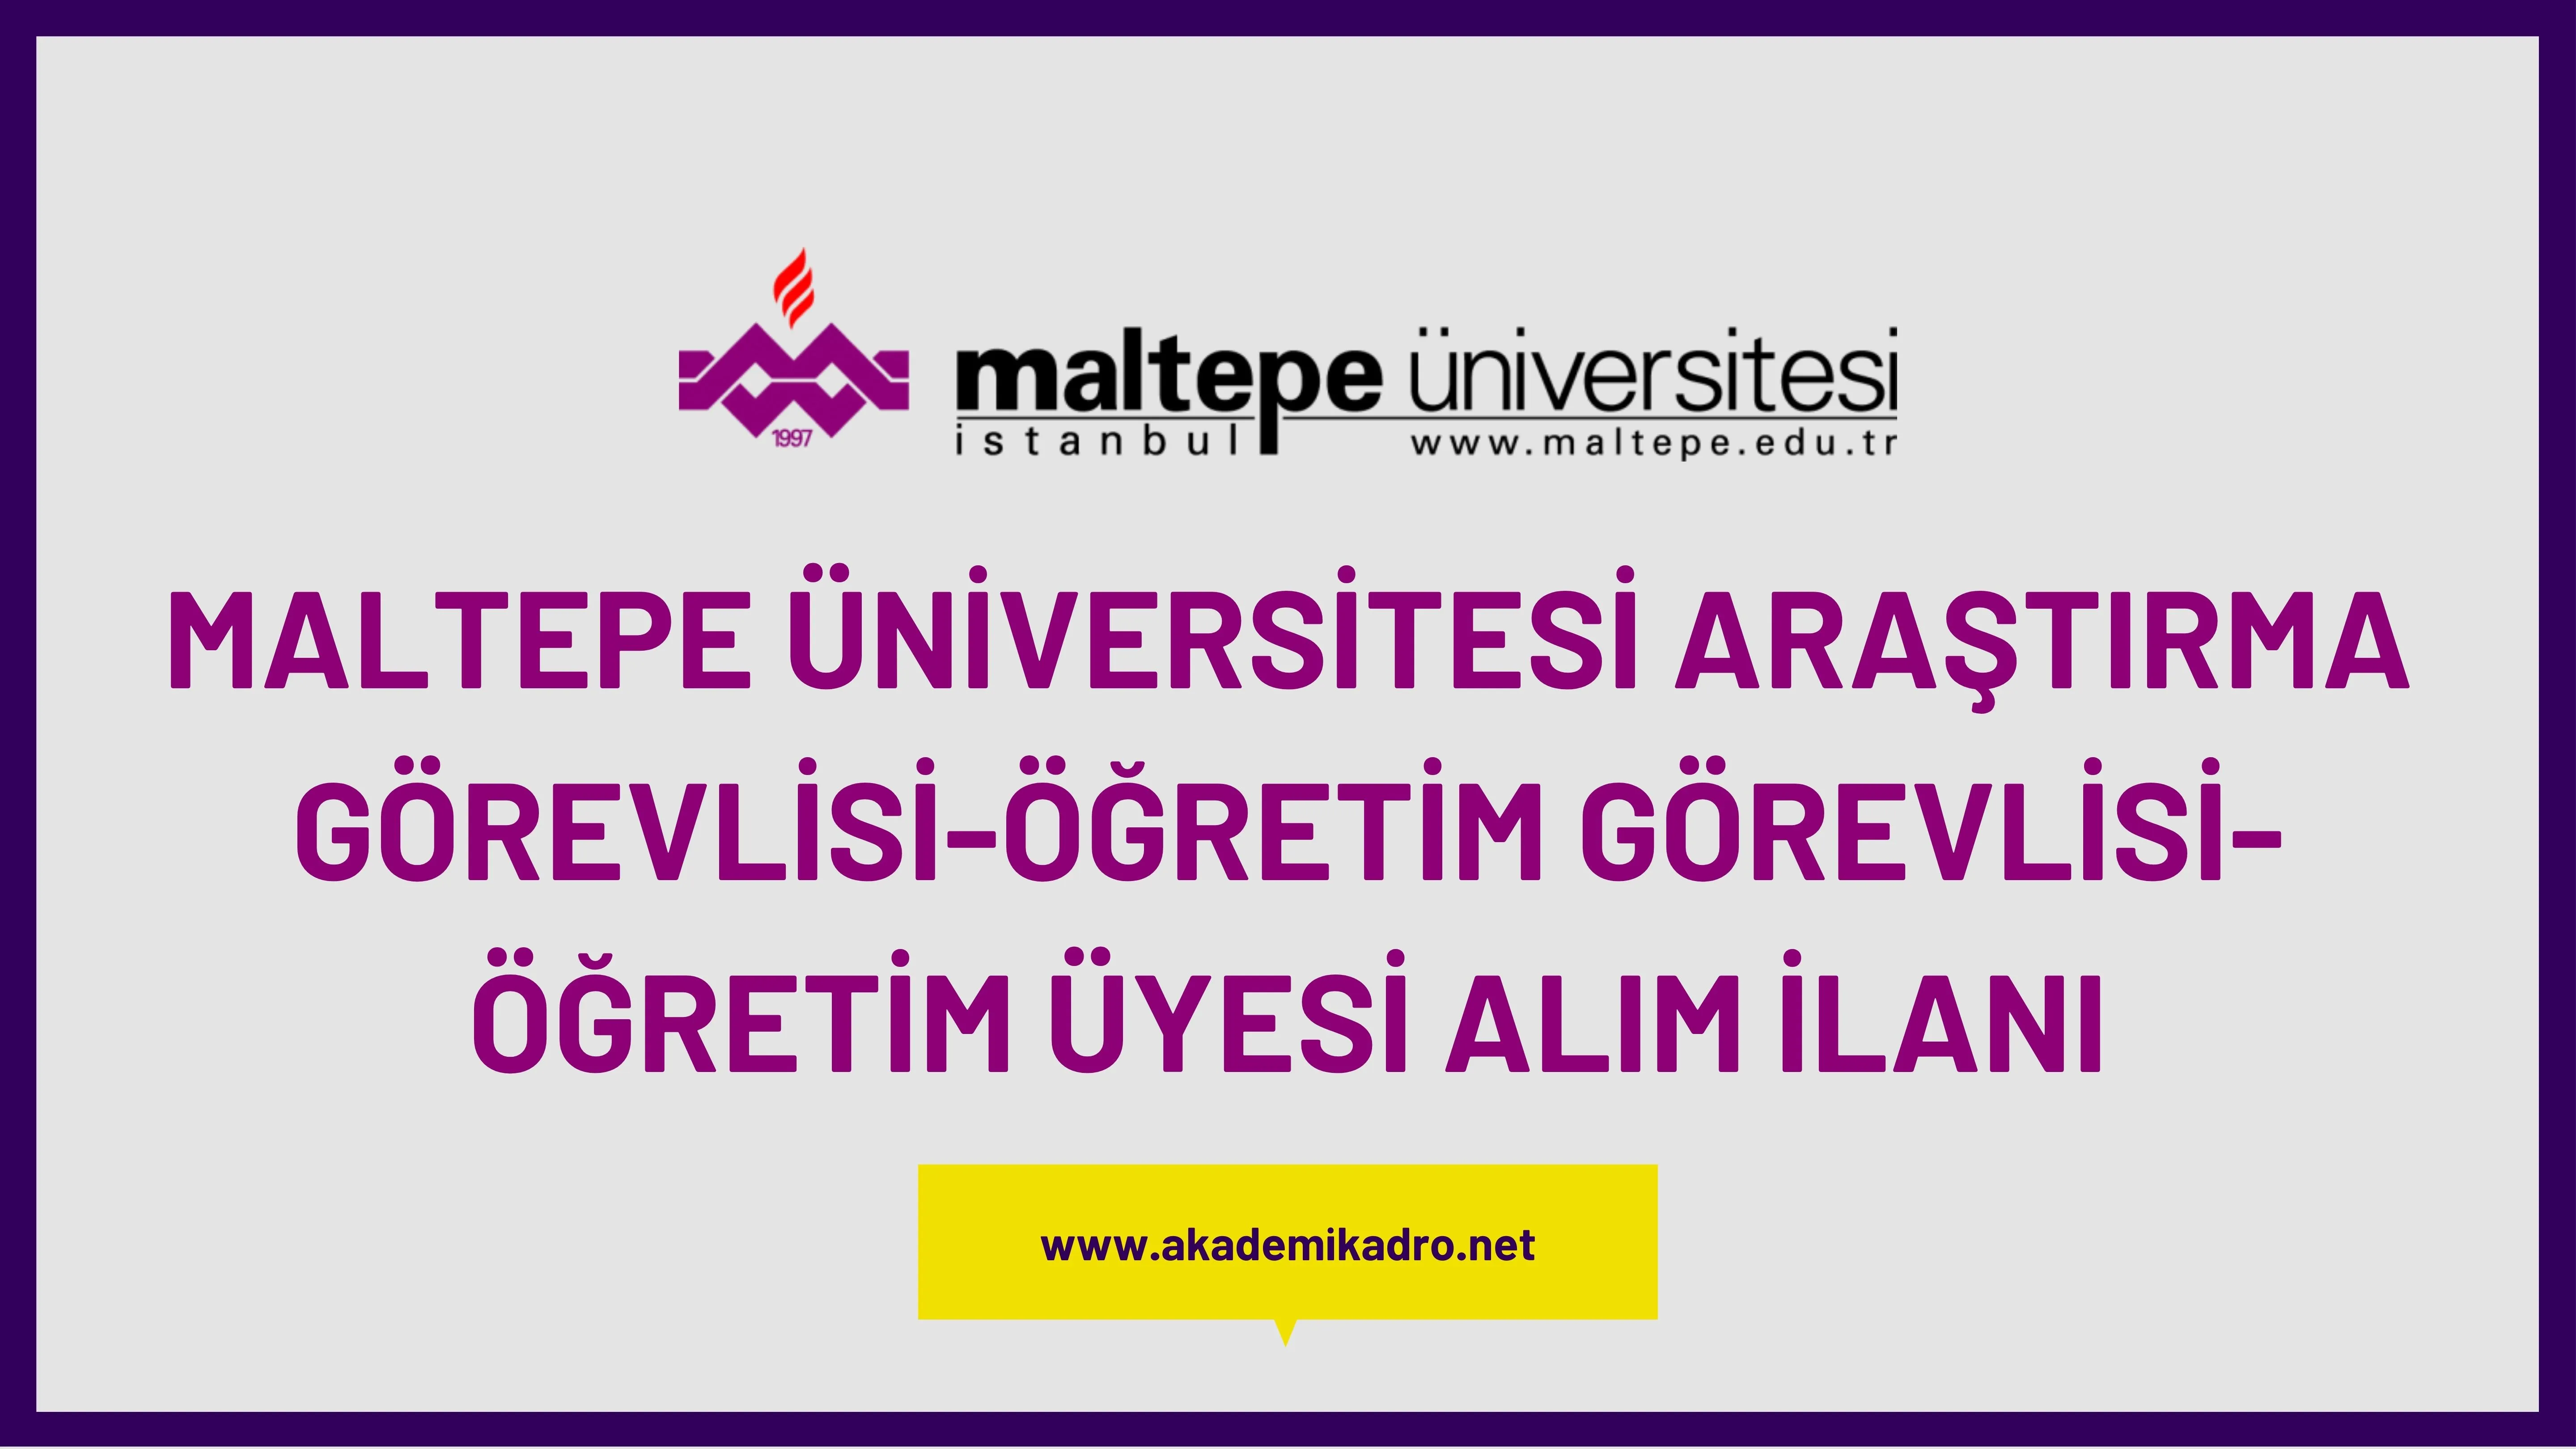 Maltepe Üniversitesi 3 Öğreetim görevlisi, 5 Araştırma görevlisi ve 34 Öğretim üyesi alacak.